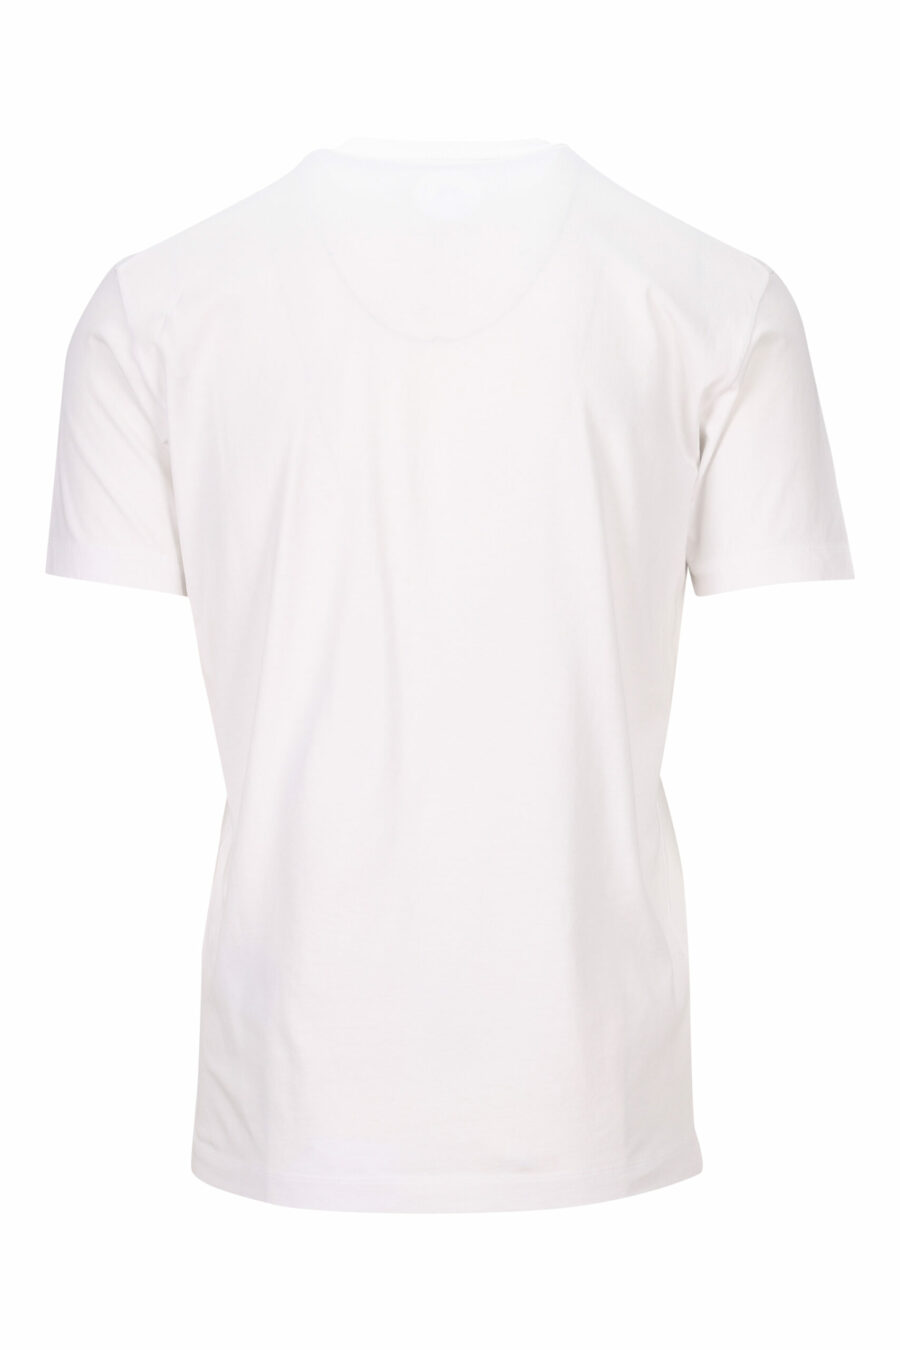 Weißes T-Shirt mit schwarzem "Suburbans"-Mini-Logo - 8054148512842 1 skaliert